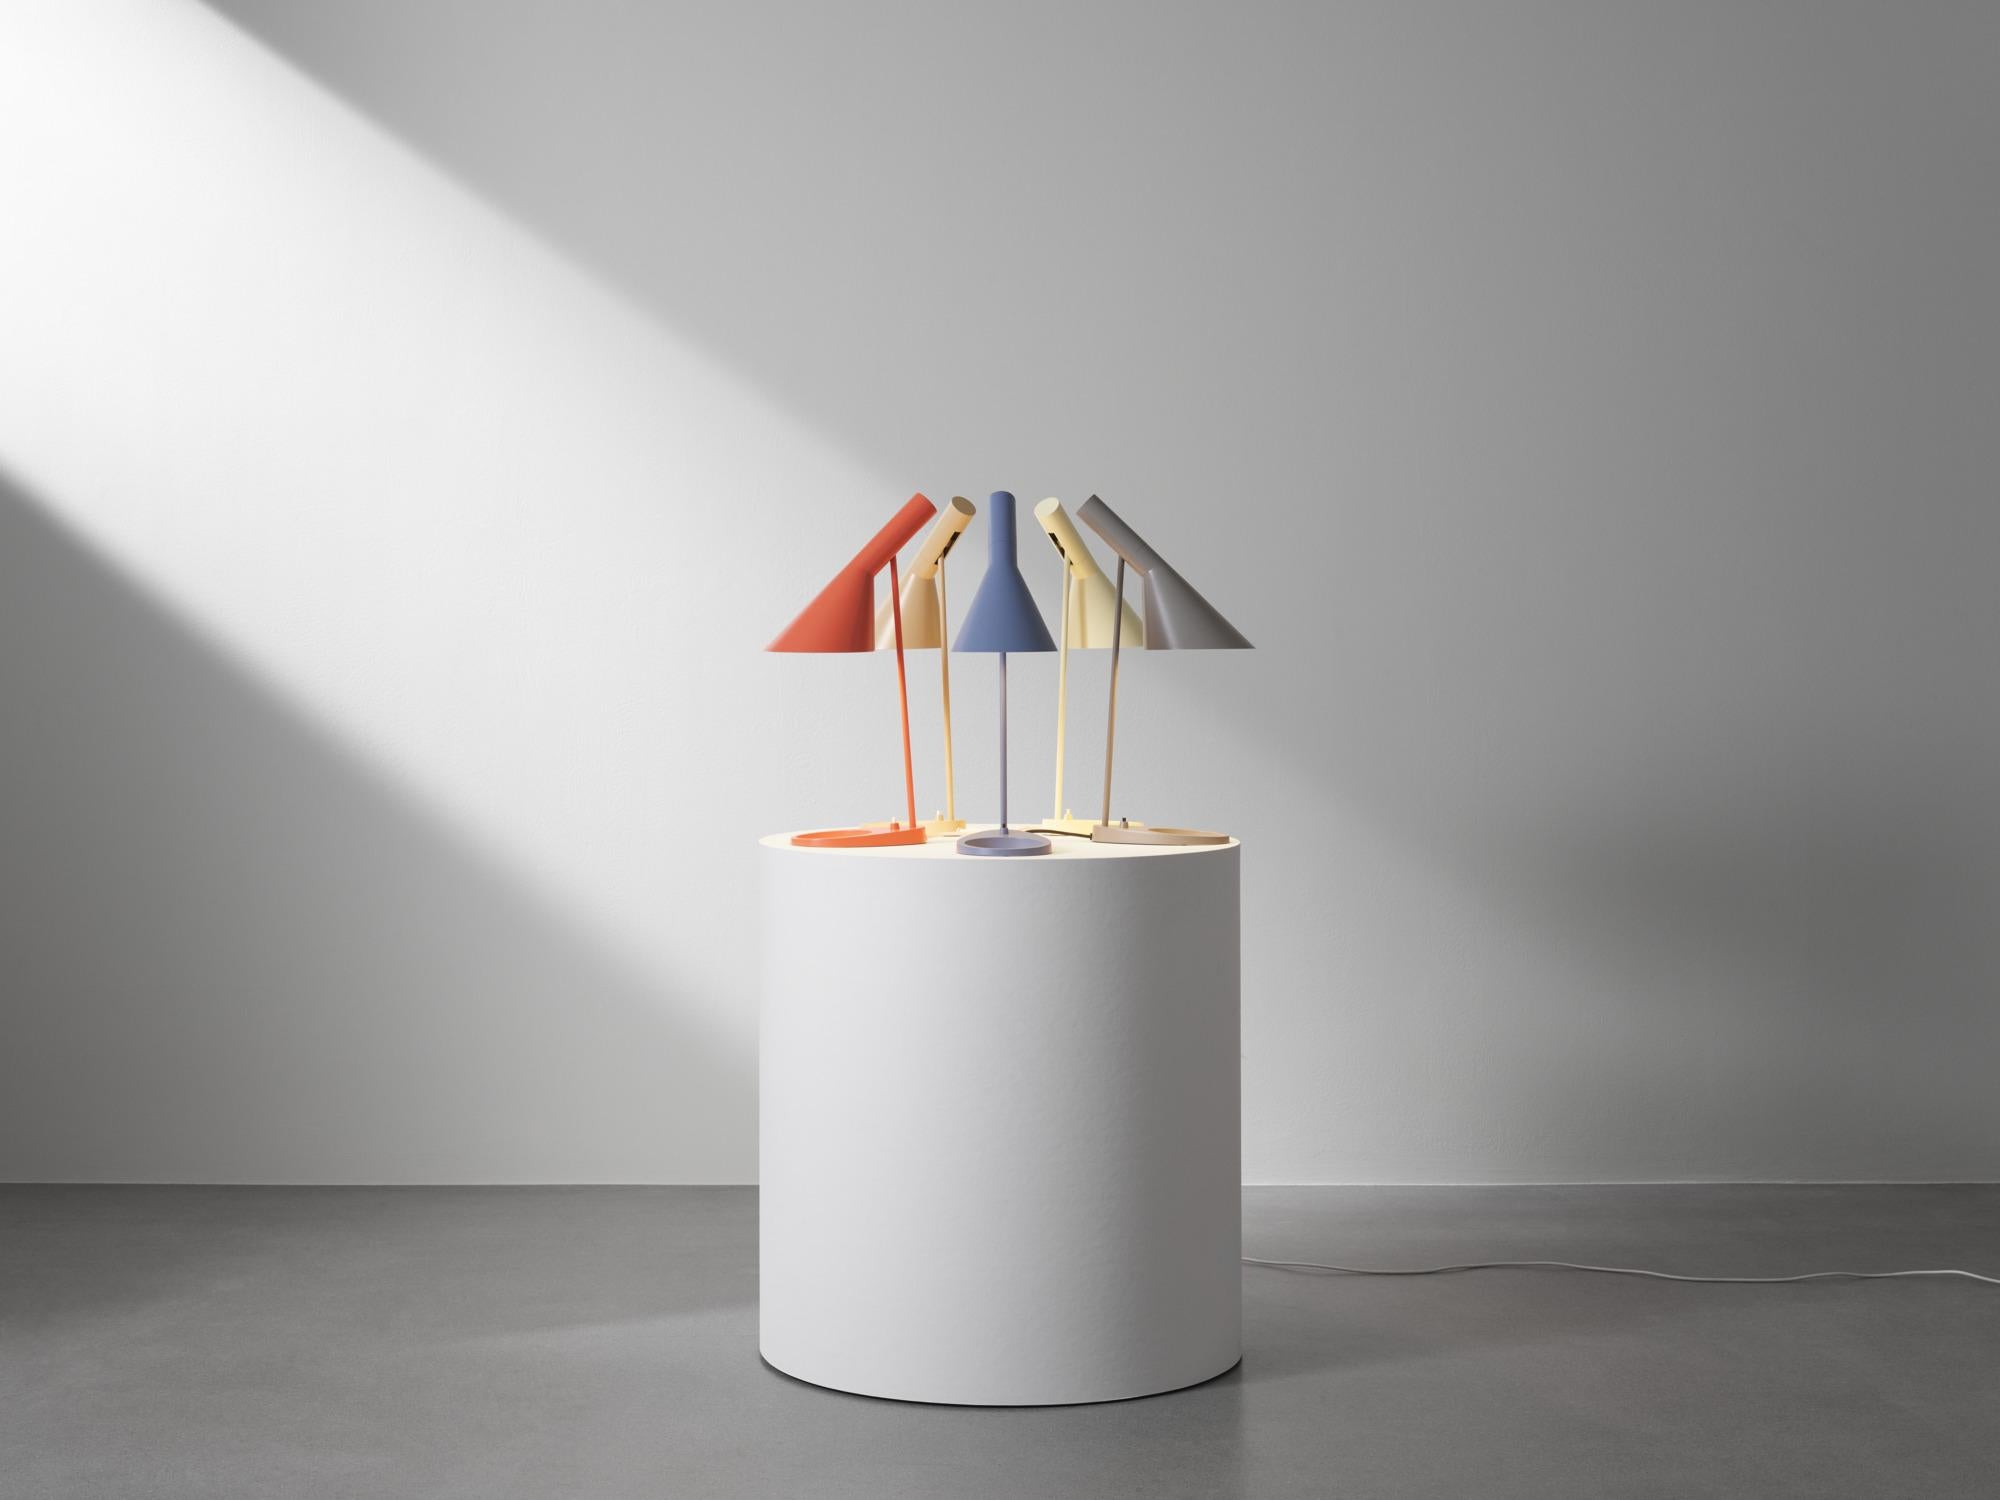 Lampe de table AJ d'Arne Jacobsen en gris chaud pour Louis Poulsen.

La série AJ faisait partie de la collection de luminaires que le célèbre designer danois Arne Jacobsen a créée pour le premier hôtel SAS Royal en 1957. Aujourd'hui, ses designs de